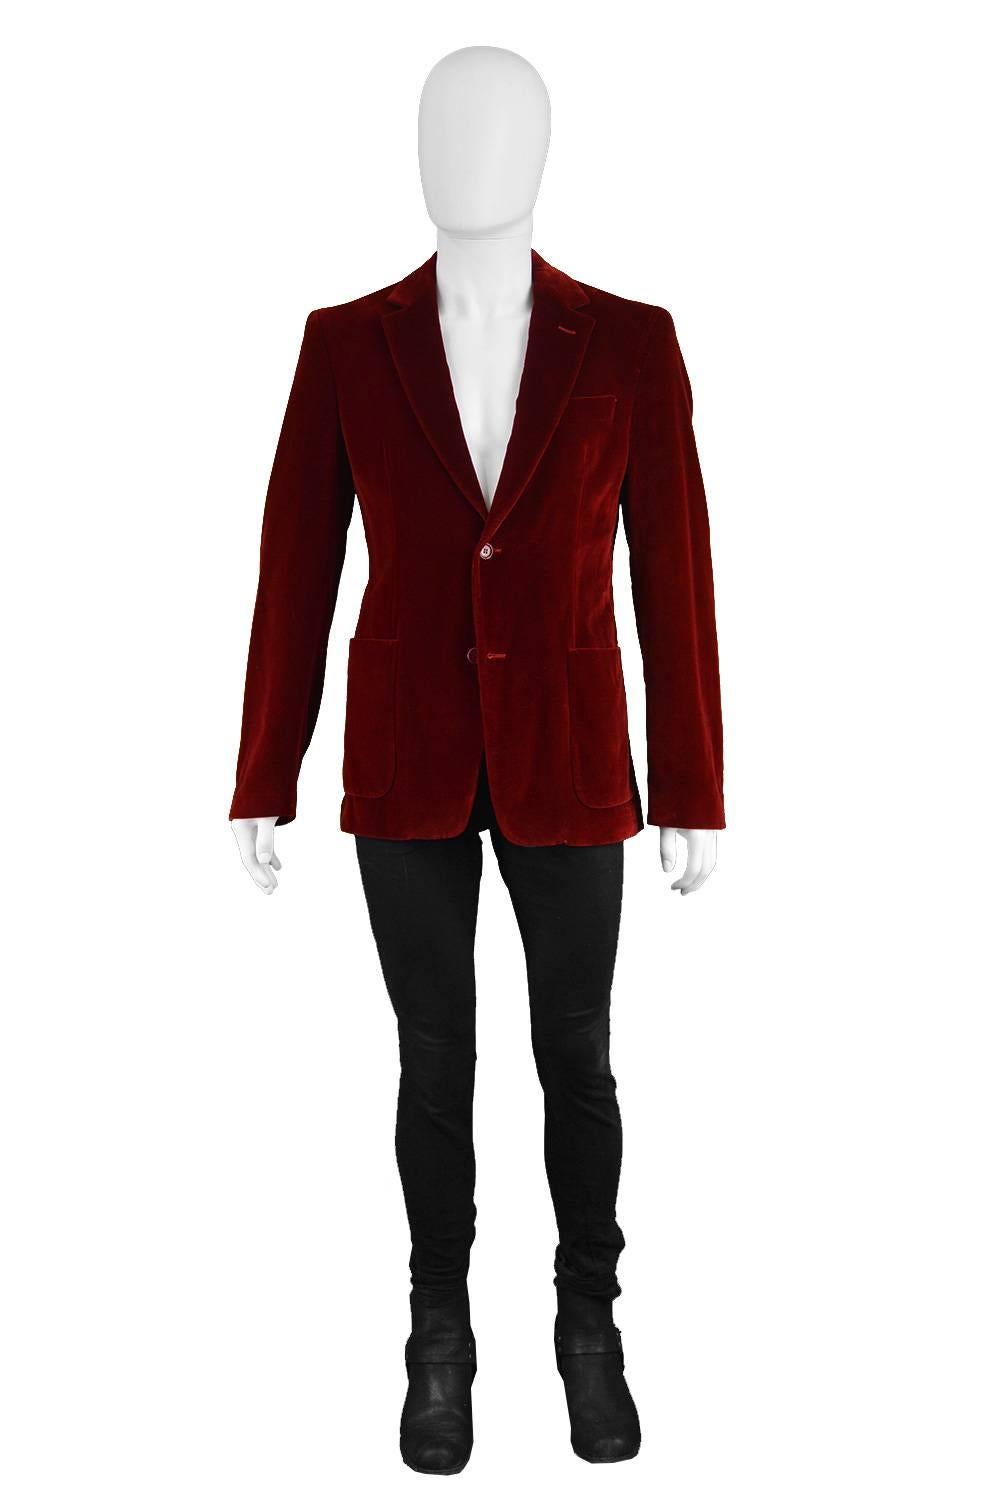 Costume National Homme Men's Red Velvet Evening Dinner Blazer Jacket

Size: Marked 50 but fits more like a men's Small. Please check measurements. 
Chest - 38” / 96cm
Waist - 34” / 86cm
Length (Shoulder to Hem) - 28” / 71cm
Shoulder to Shoulder -